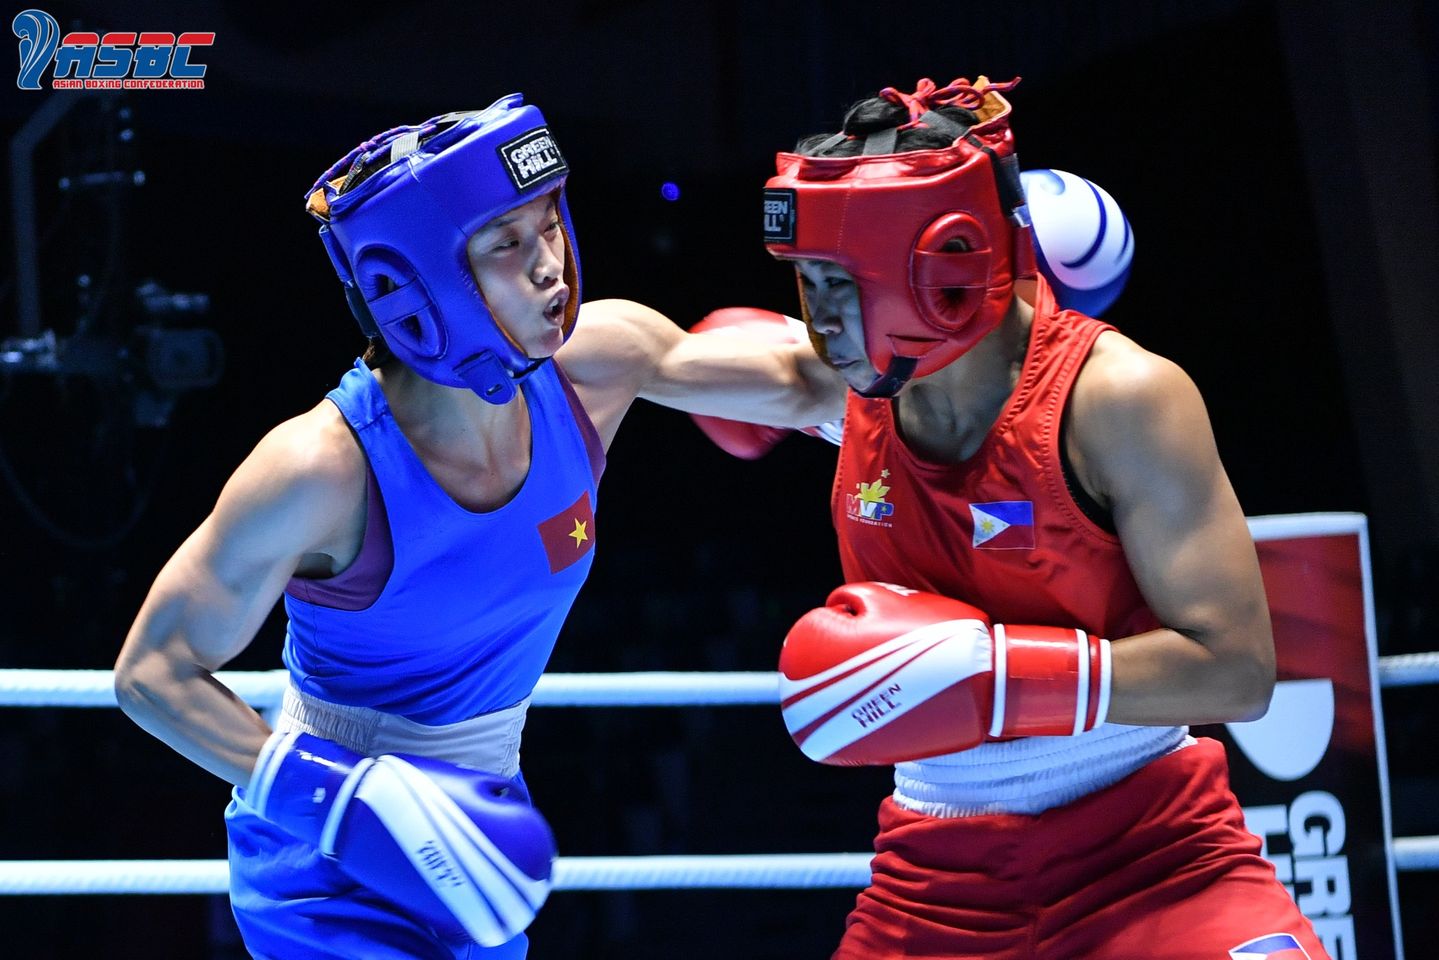 Nguyễn Thị Tâm vượt qua đối thủ Philippines, lọt vào tứ kết giải vô địch boxing châu Á - Ảnh 1.